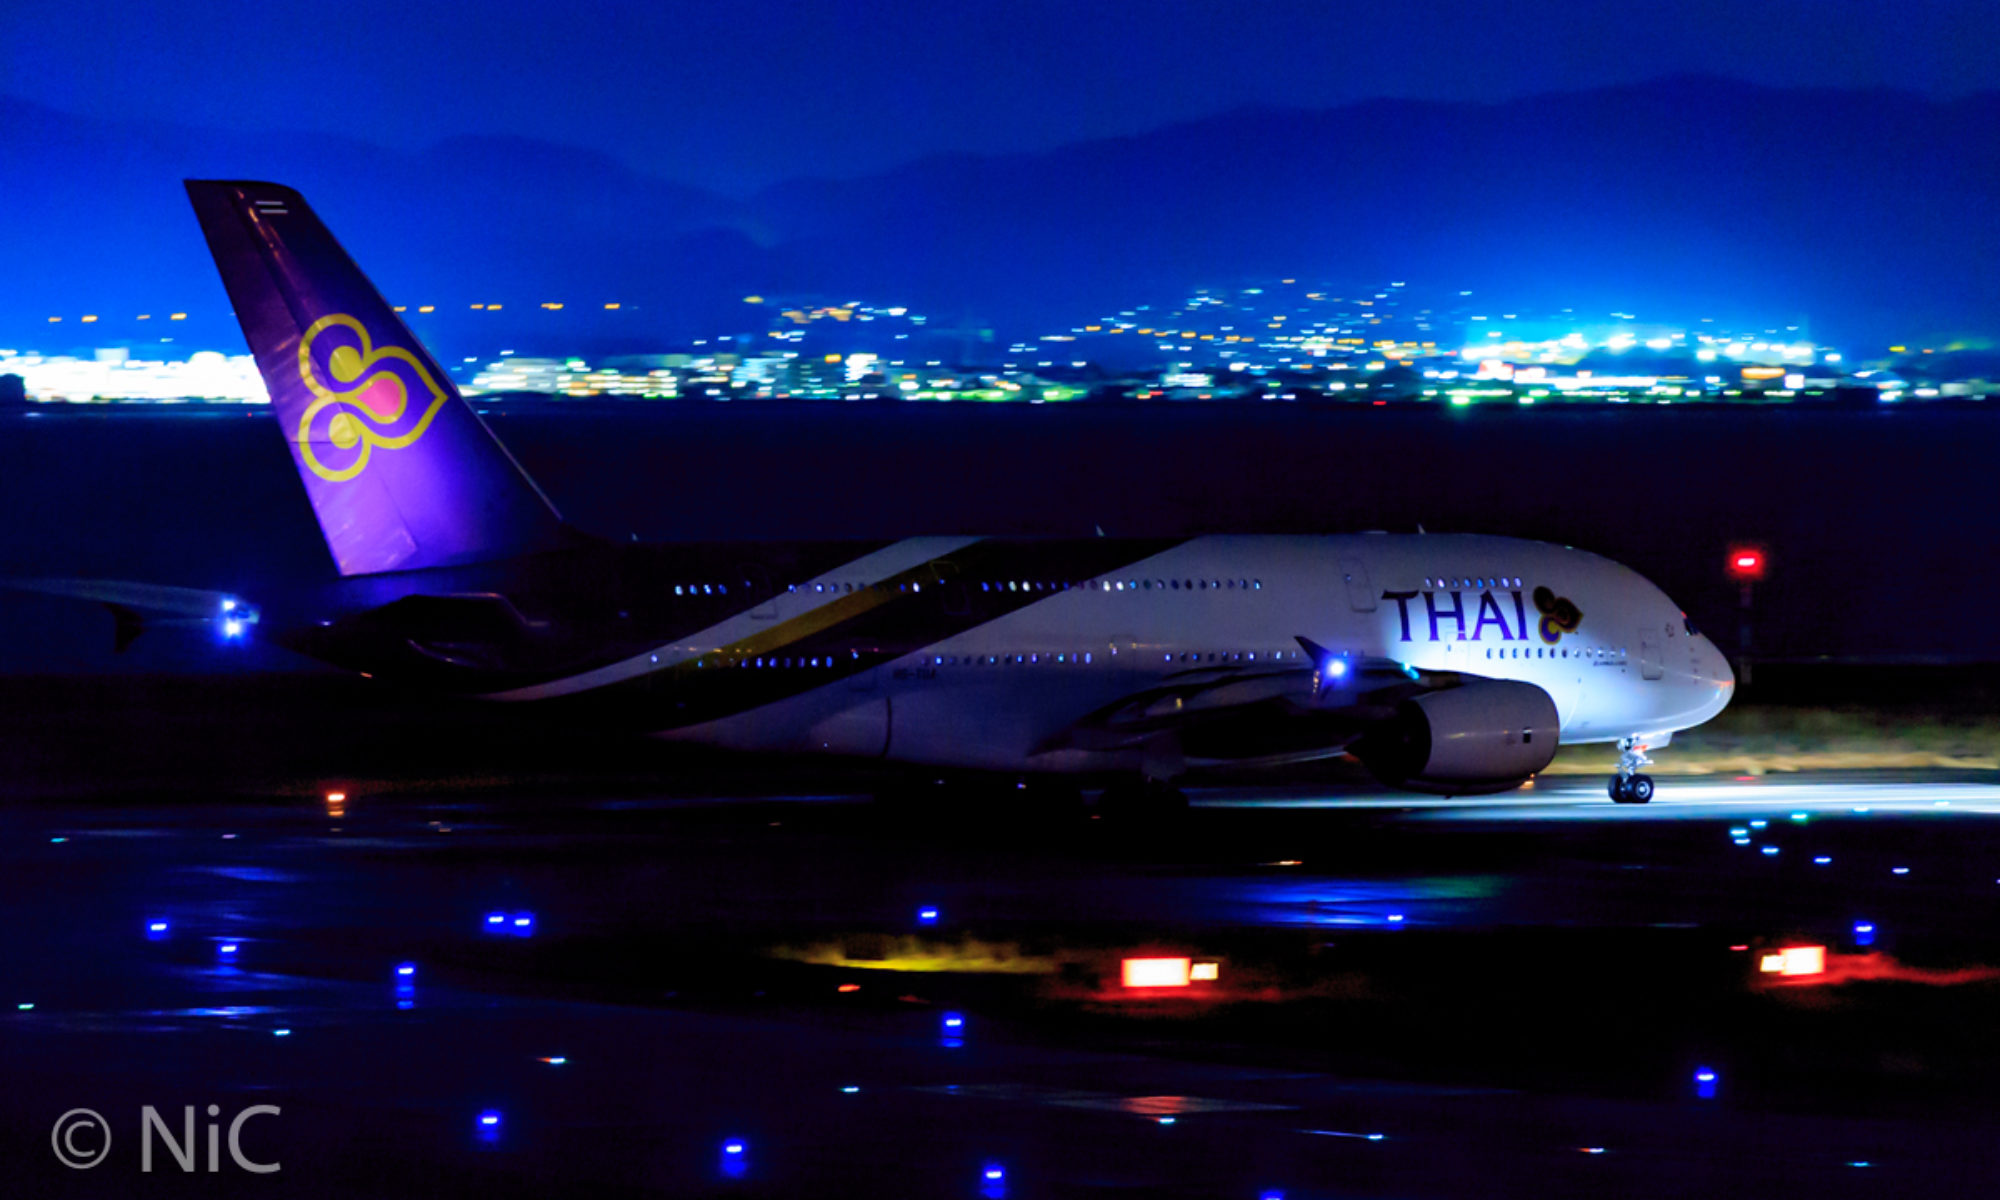 Thai Airways A380 in the night